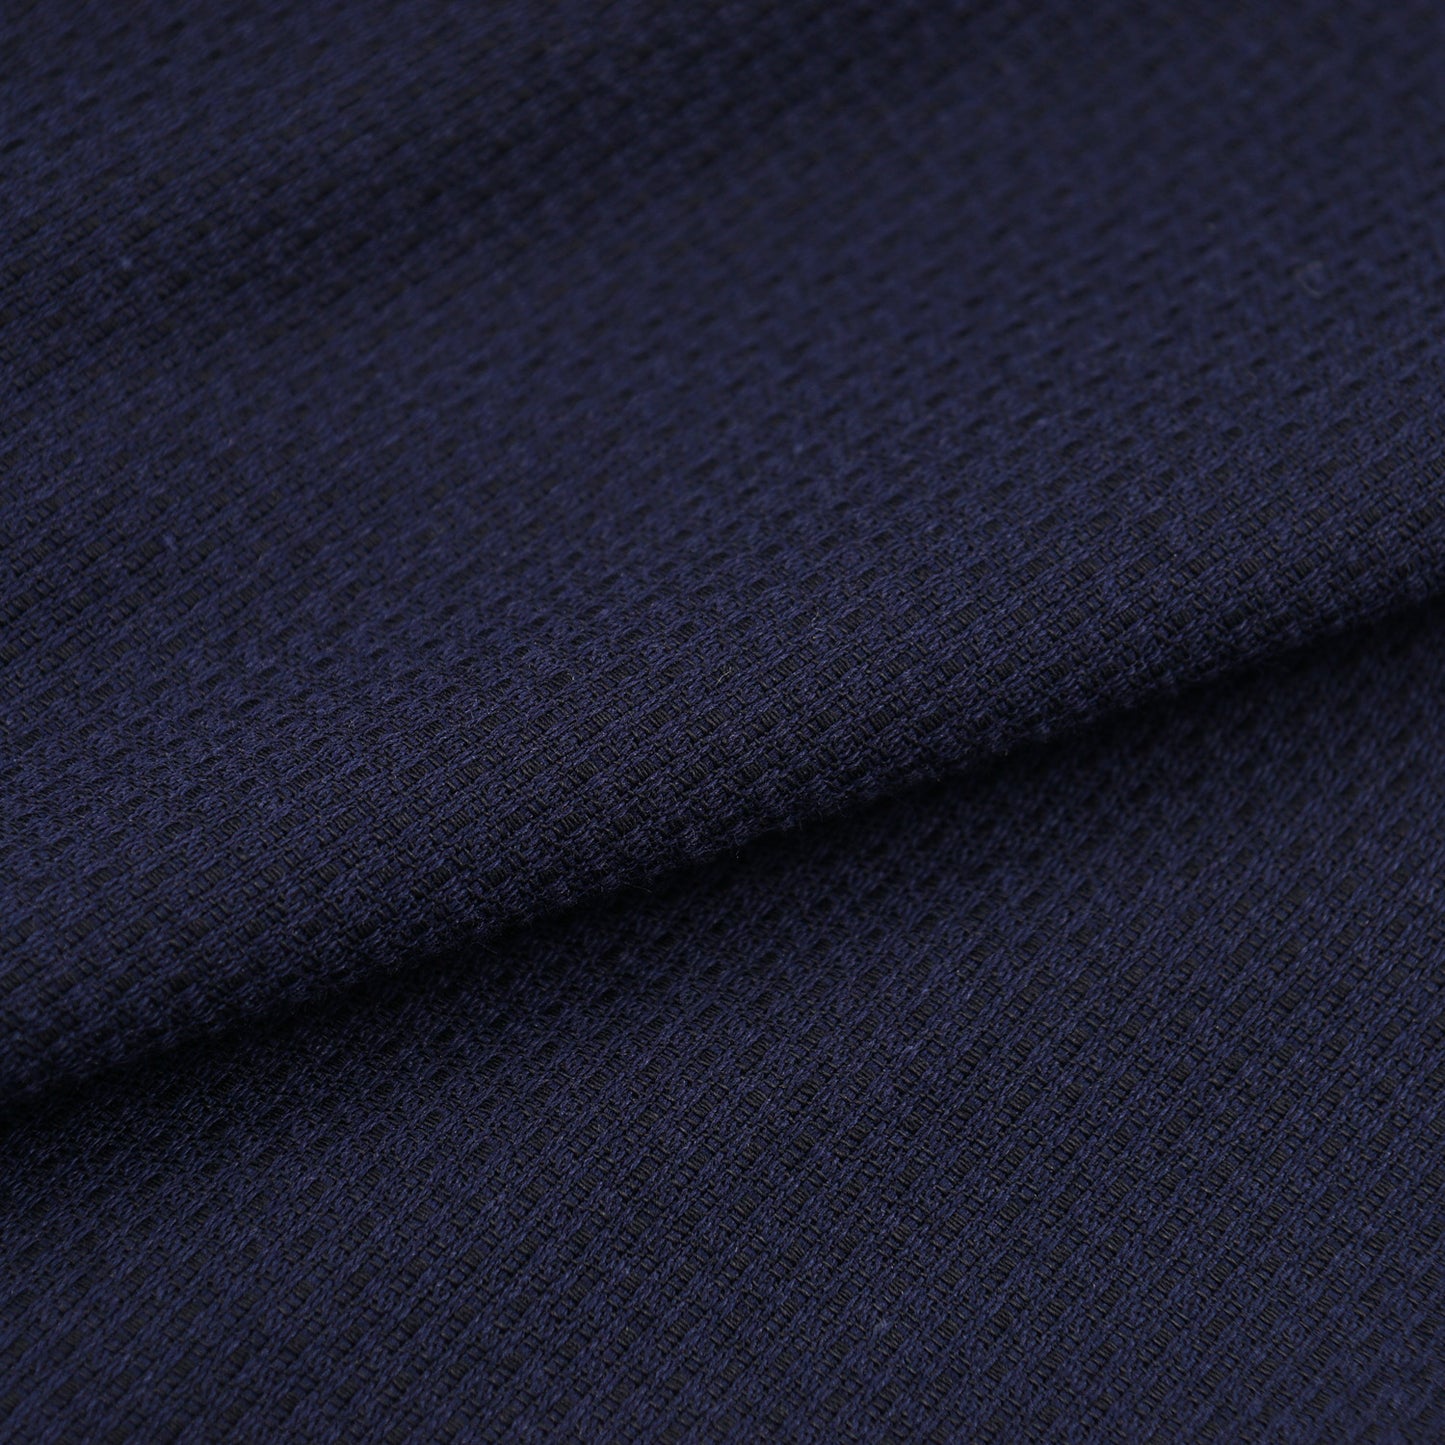 PT01 Woven Patterned Cotton Pants - Top Shelf Apparel